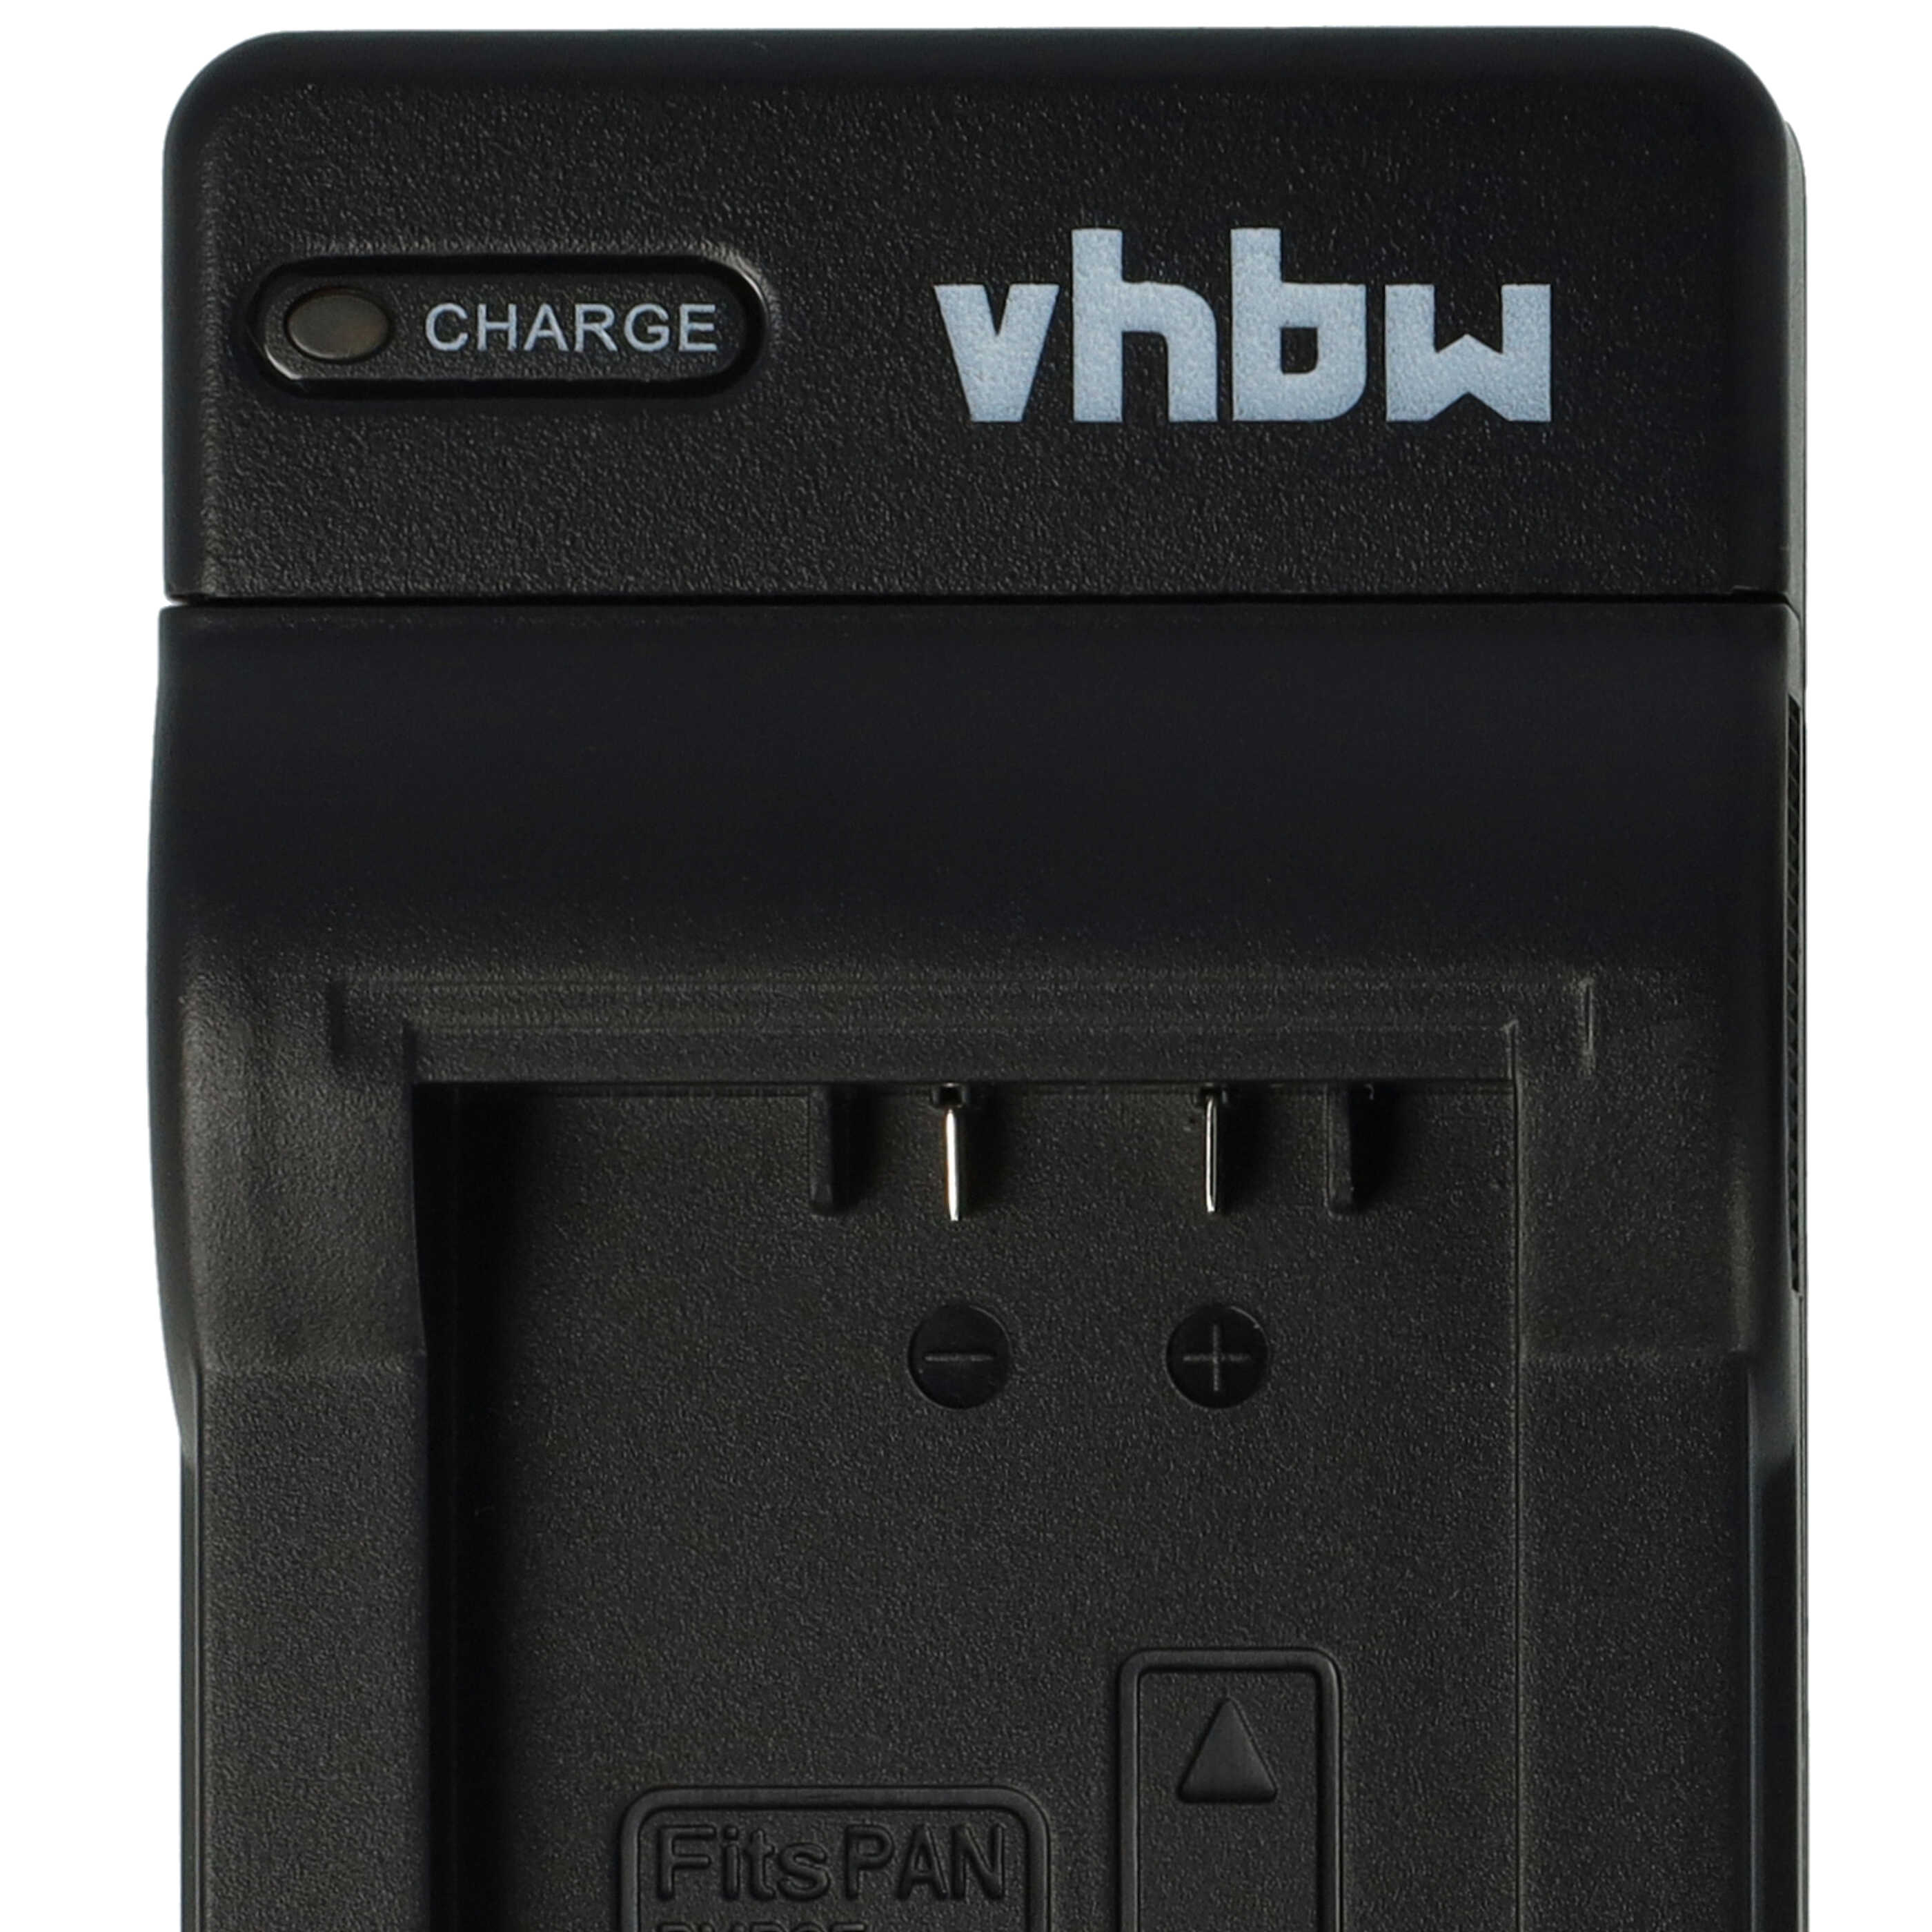 Chargeur pour appareil photo V-Lux 4 